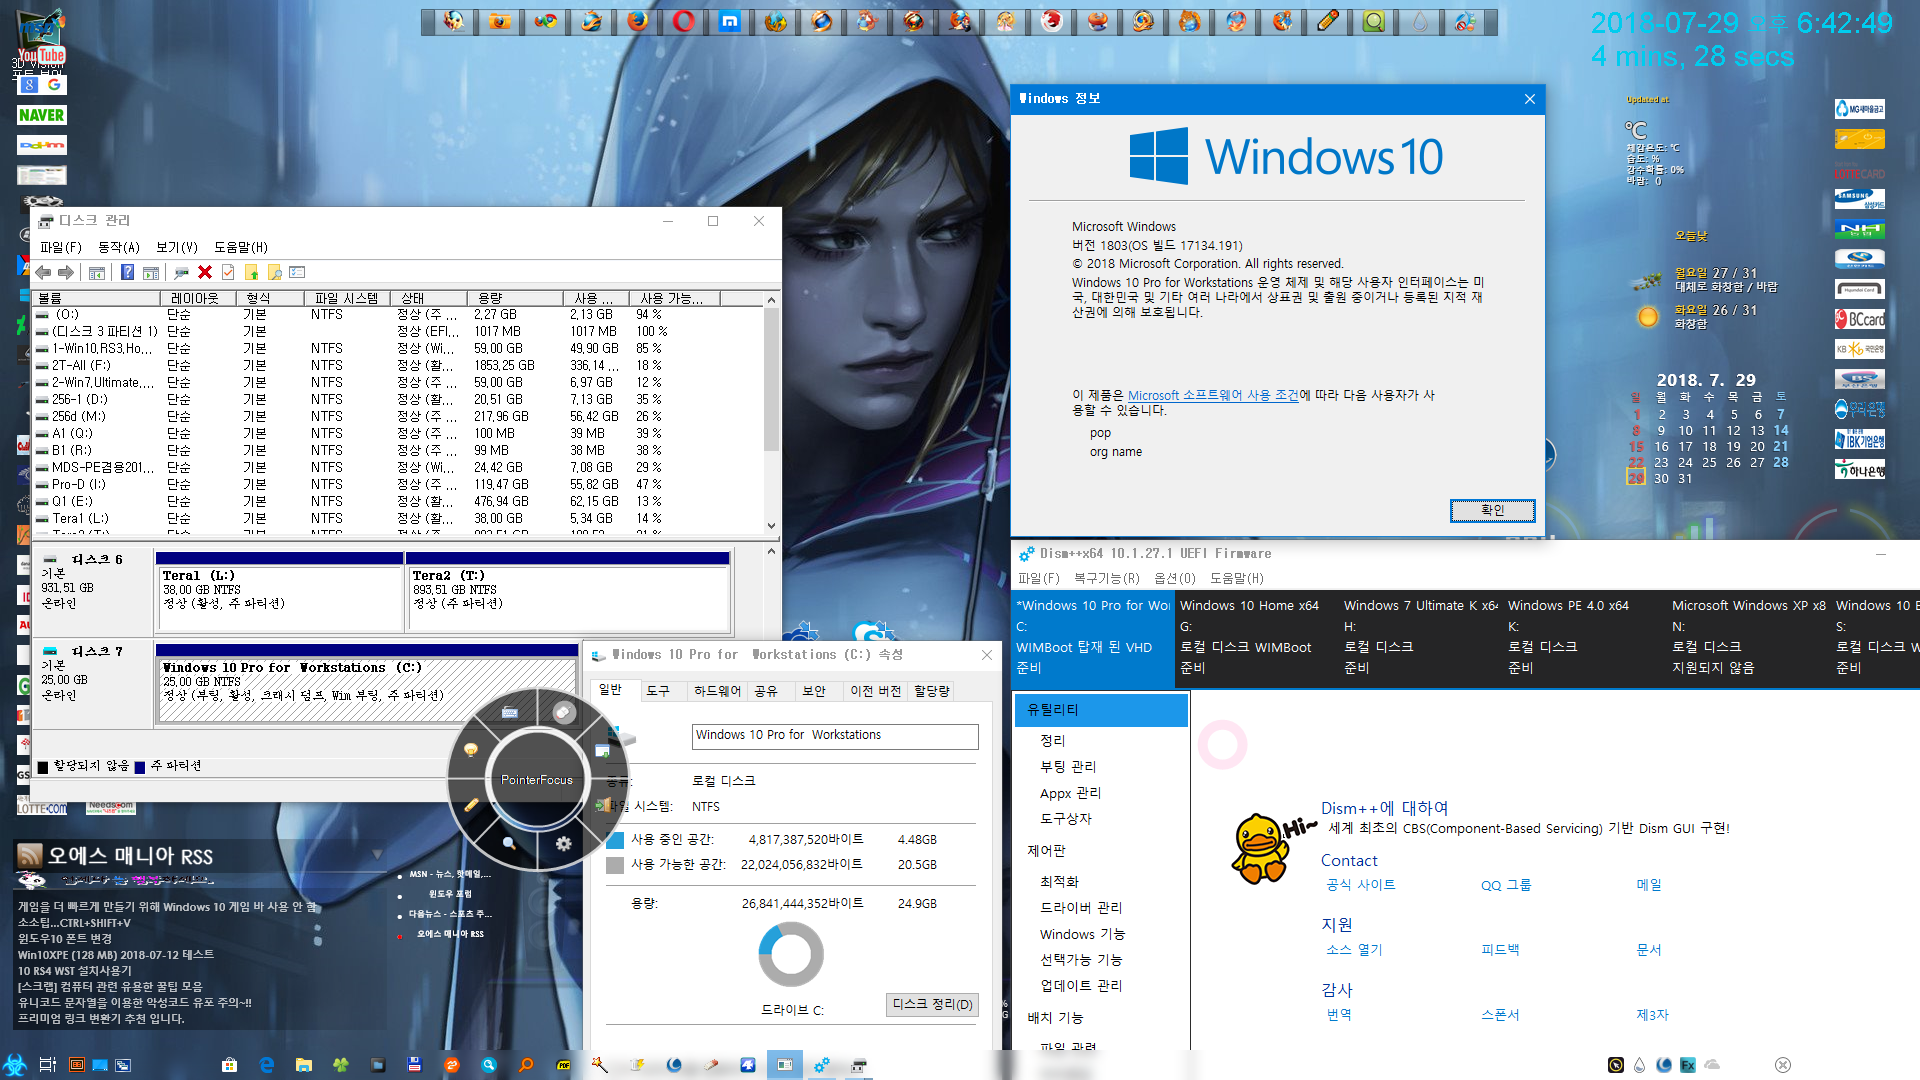 태풍OO님 Windows 10 Pro for  Workstations Rs4 x64 17134.191 2in1 pArAoV22-설치 테스트 wimboot 고정 VHD 방식 - 에어로 부팅 때 시작하지 않도록 하고 다시 스샷 2018-07-29_184311.png